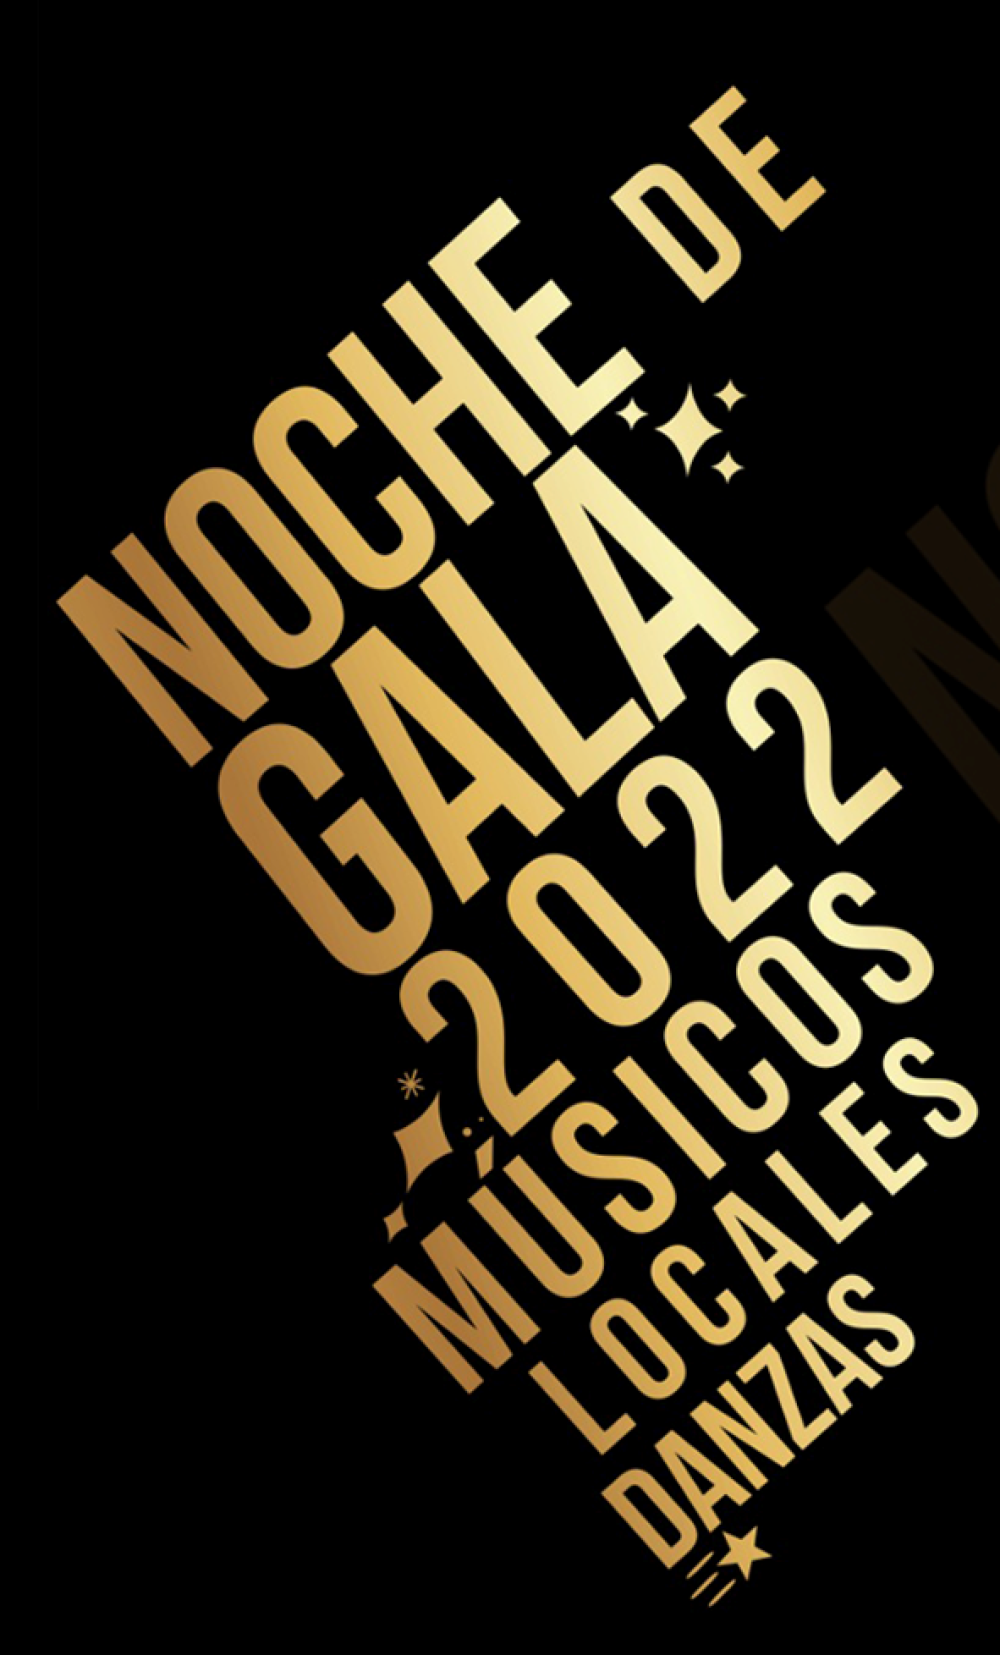 Noche de Gala: Coronel Suárez palpita la antesala de un nuevo aniversario